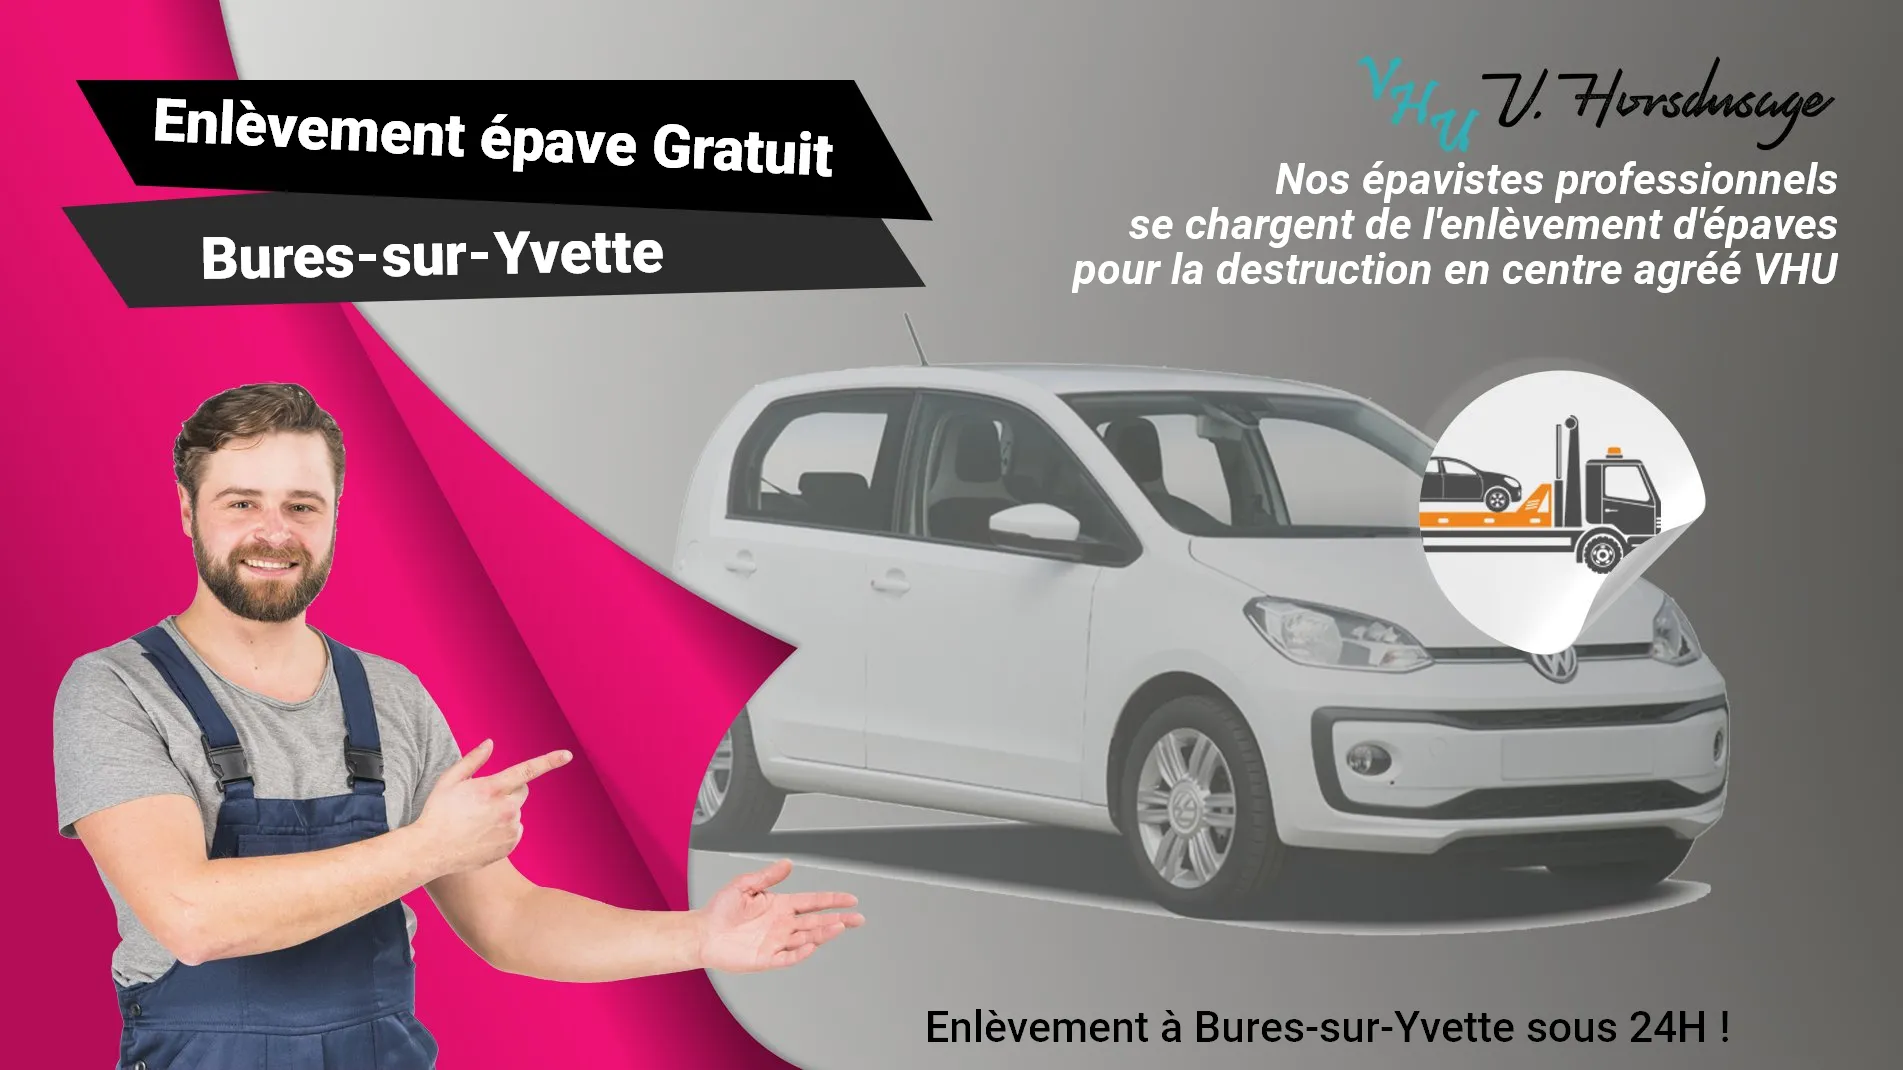 Pour un enlèvement gratuit à Bures-sur-Yvette, contactez nos épavistes agréé VHU